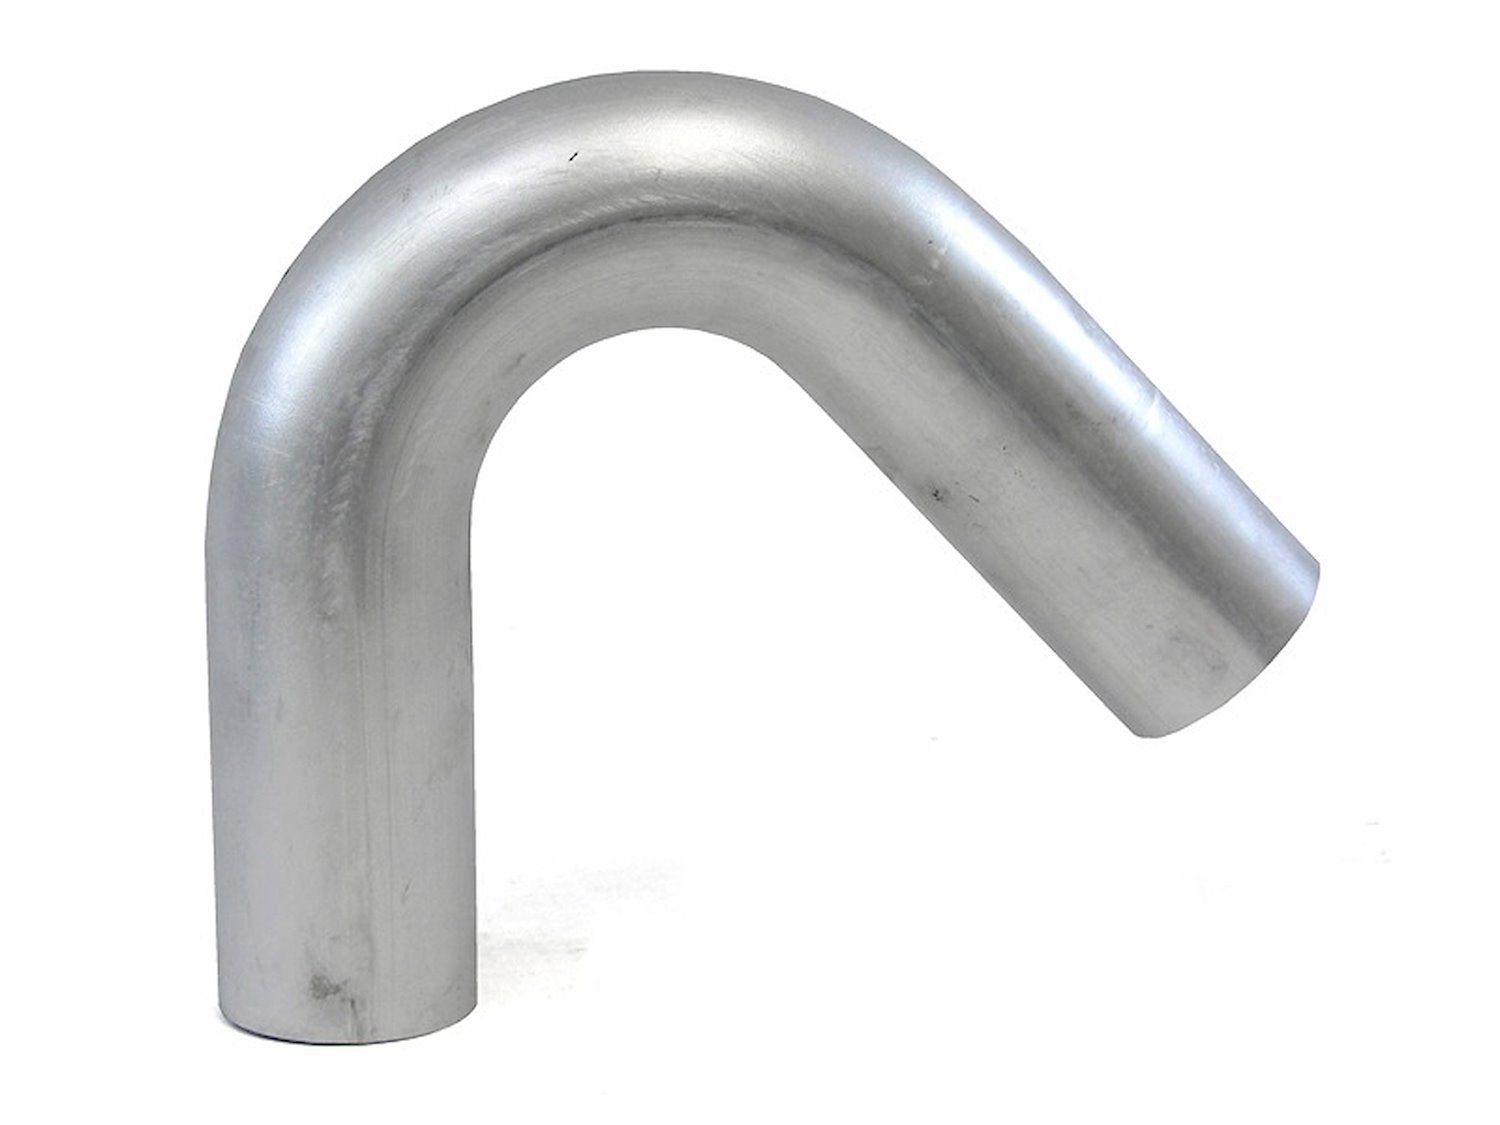 AT135-450-CLR-6 Aluminum Elbow Tube, 6061 Aluminum, 135-Degree Bend Elbow Tubing, 4-1/2 in. OD, Large Radius, 6 in. CLR